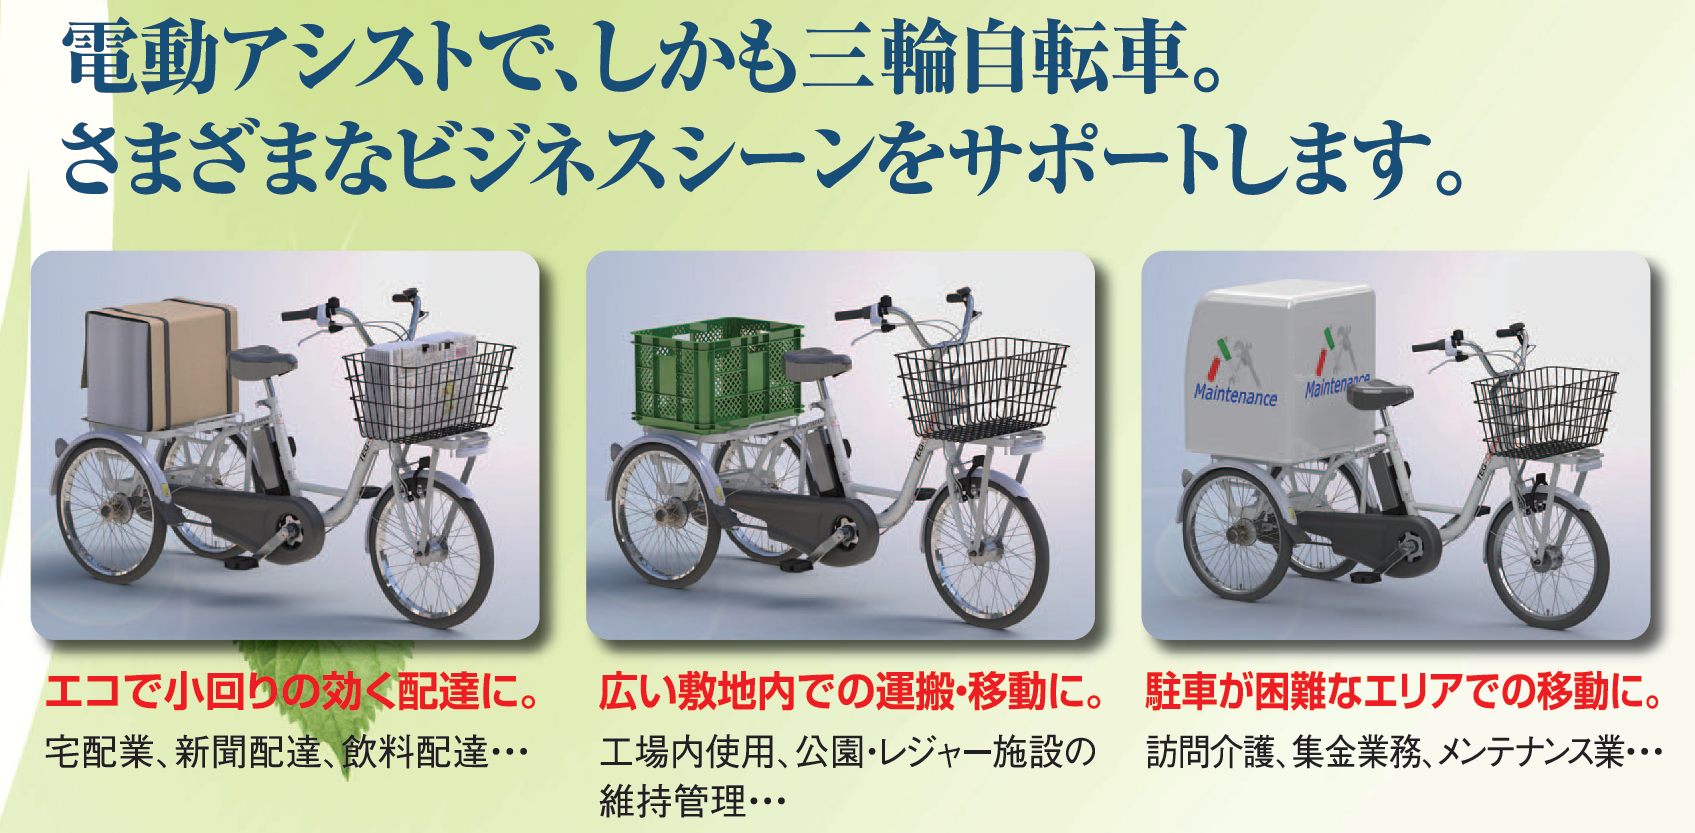 業務用の電動三輪自転車とは 三輪自転車の販売 試乗 中古